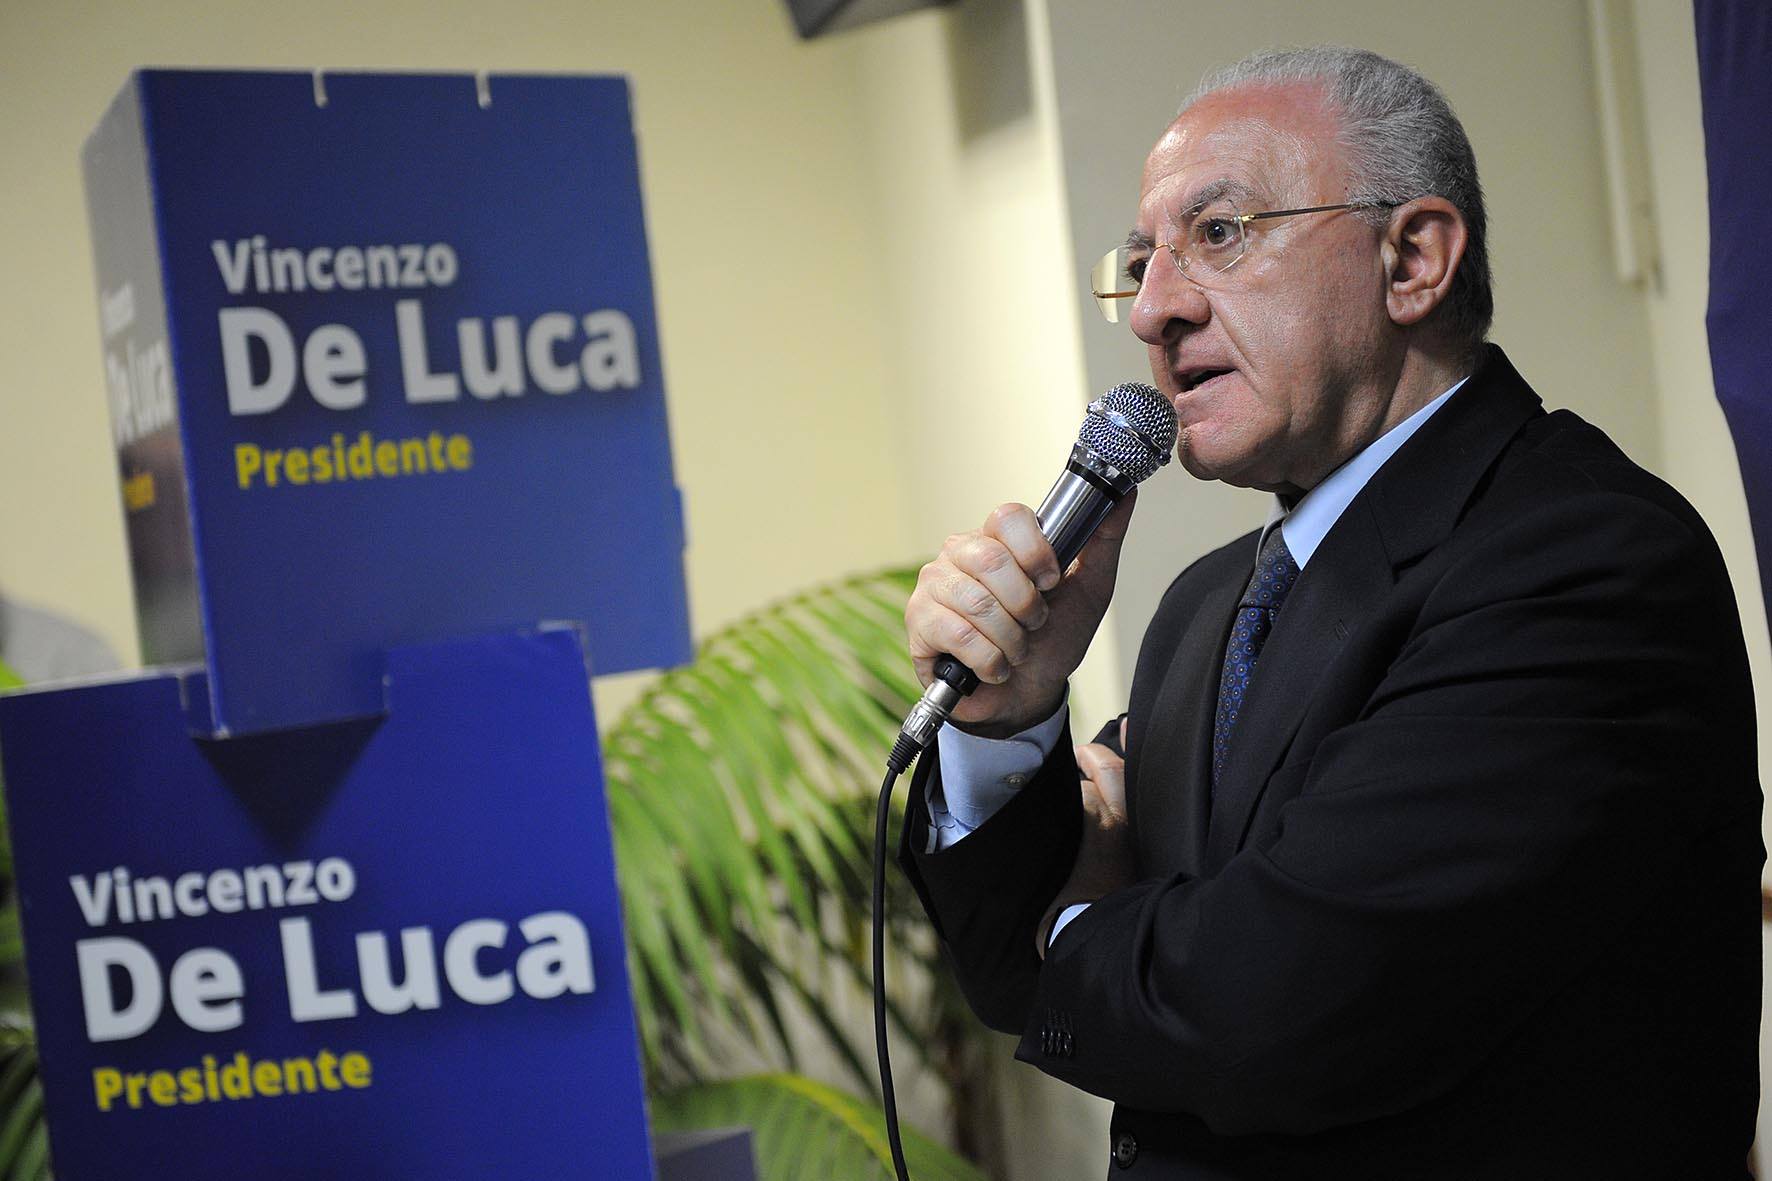 De Luca (PD): “Colpa mia, ma non votate gli impresentabili”.